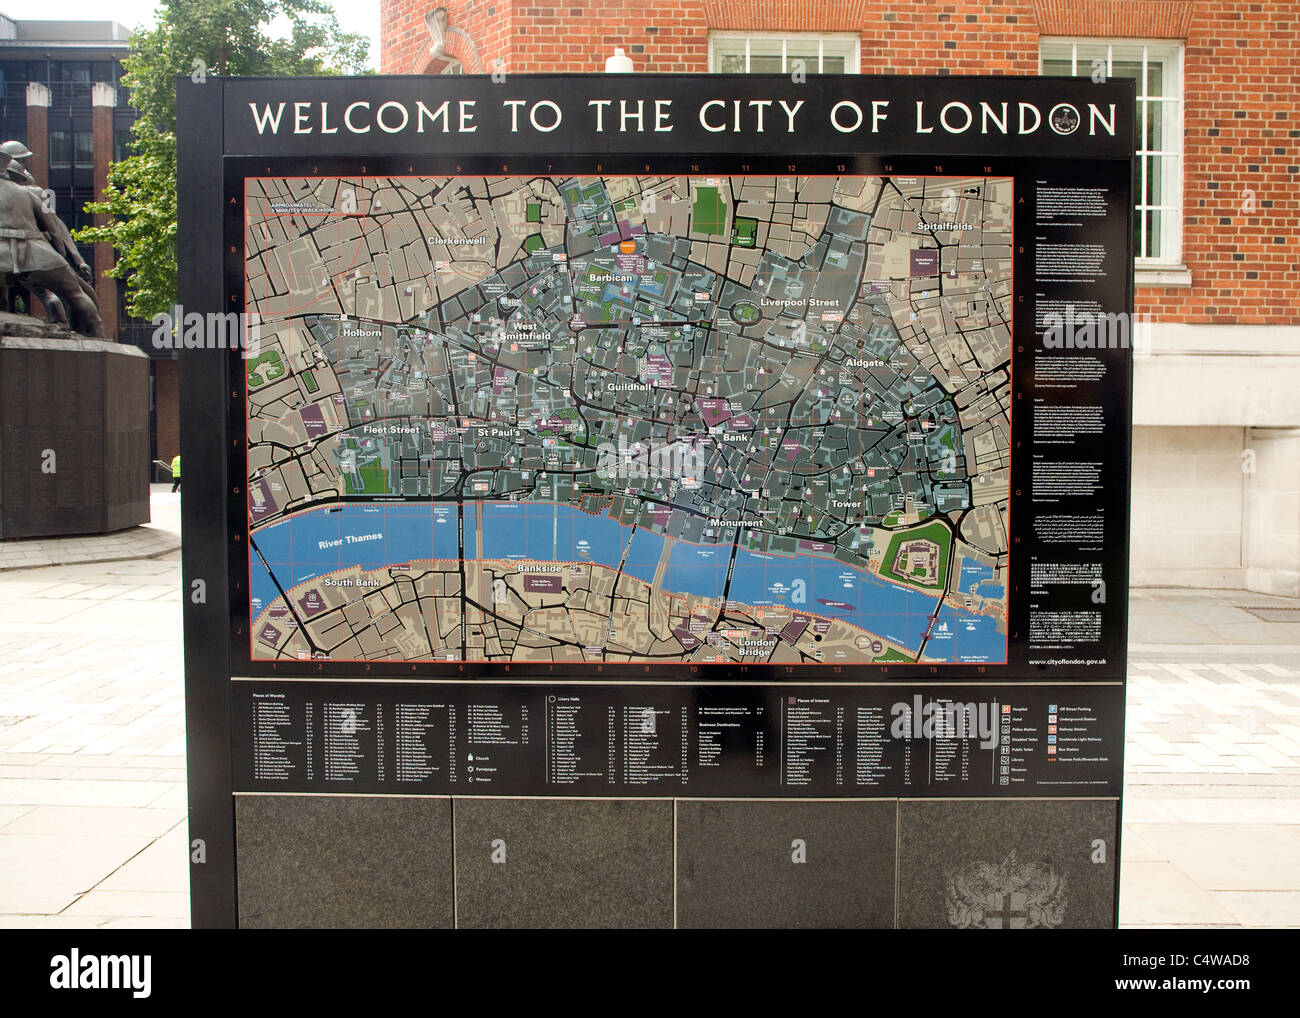 Ville de London tourist street map centre de Londres Banque D'Images